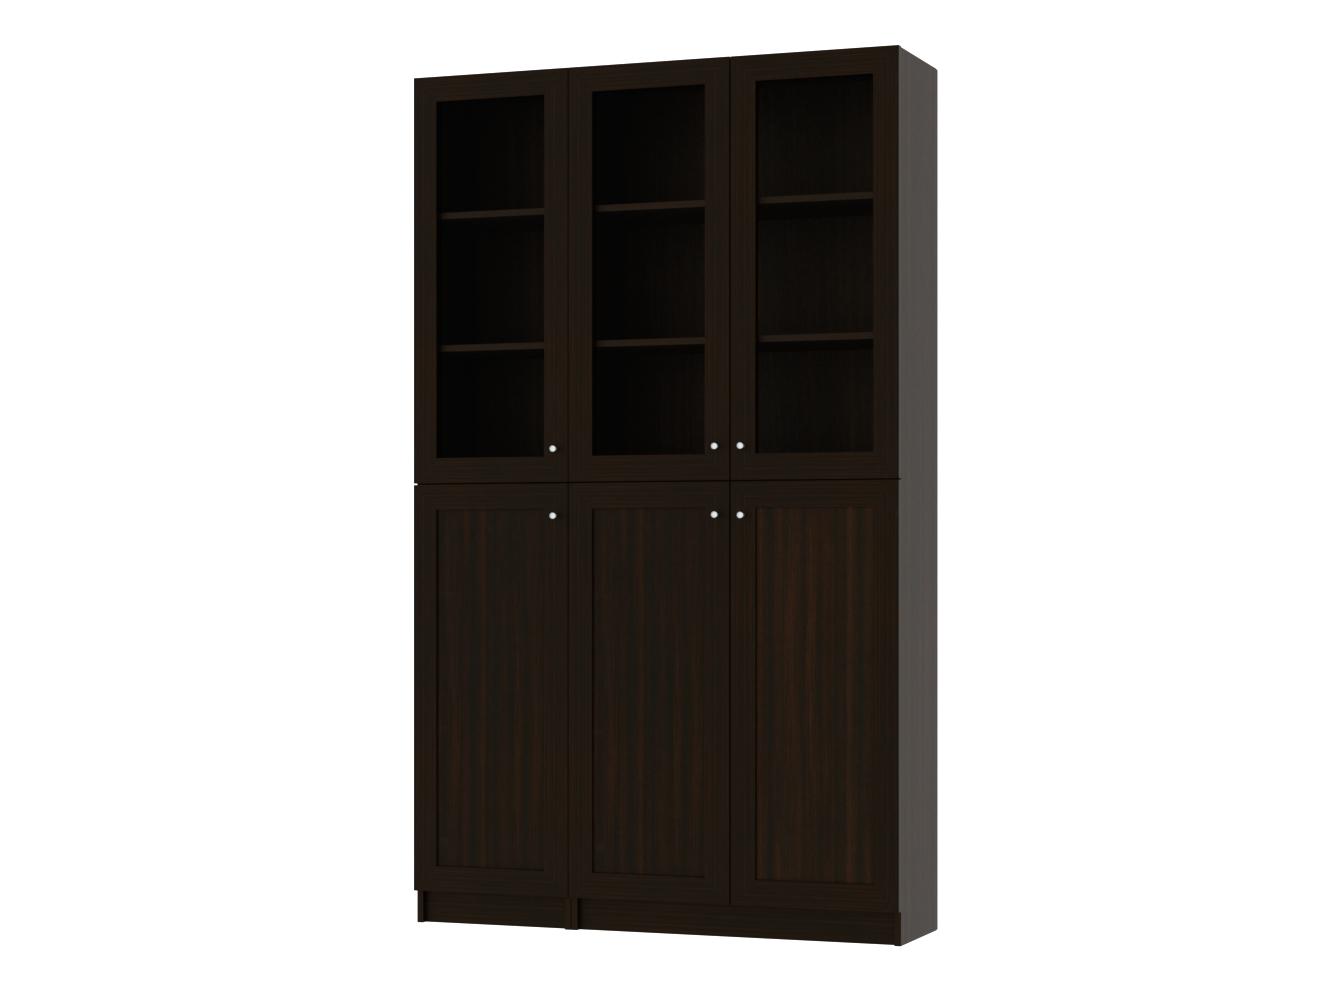 Книжный шкаф Билли 338 brown desire ИКЕА (IKEA) изображение товара